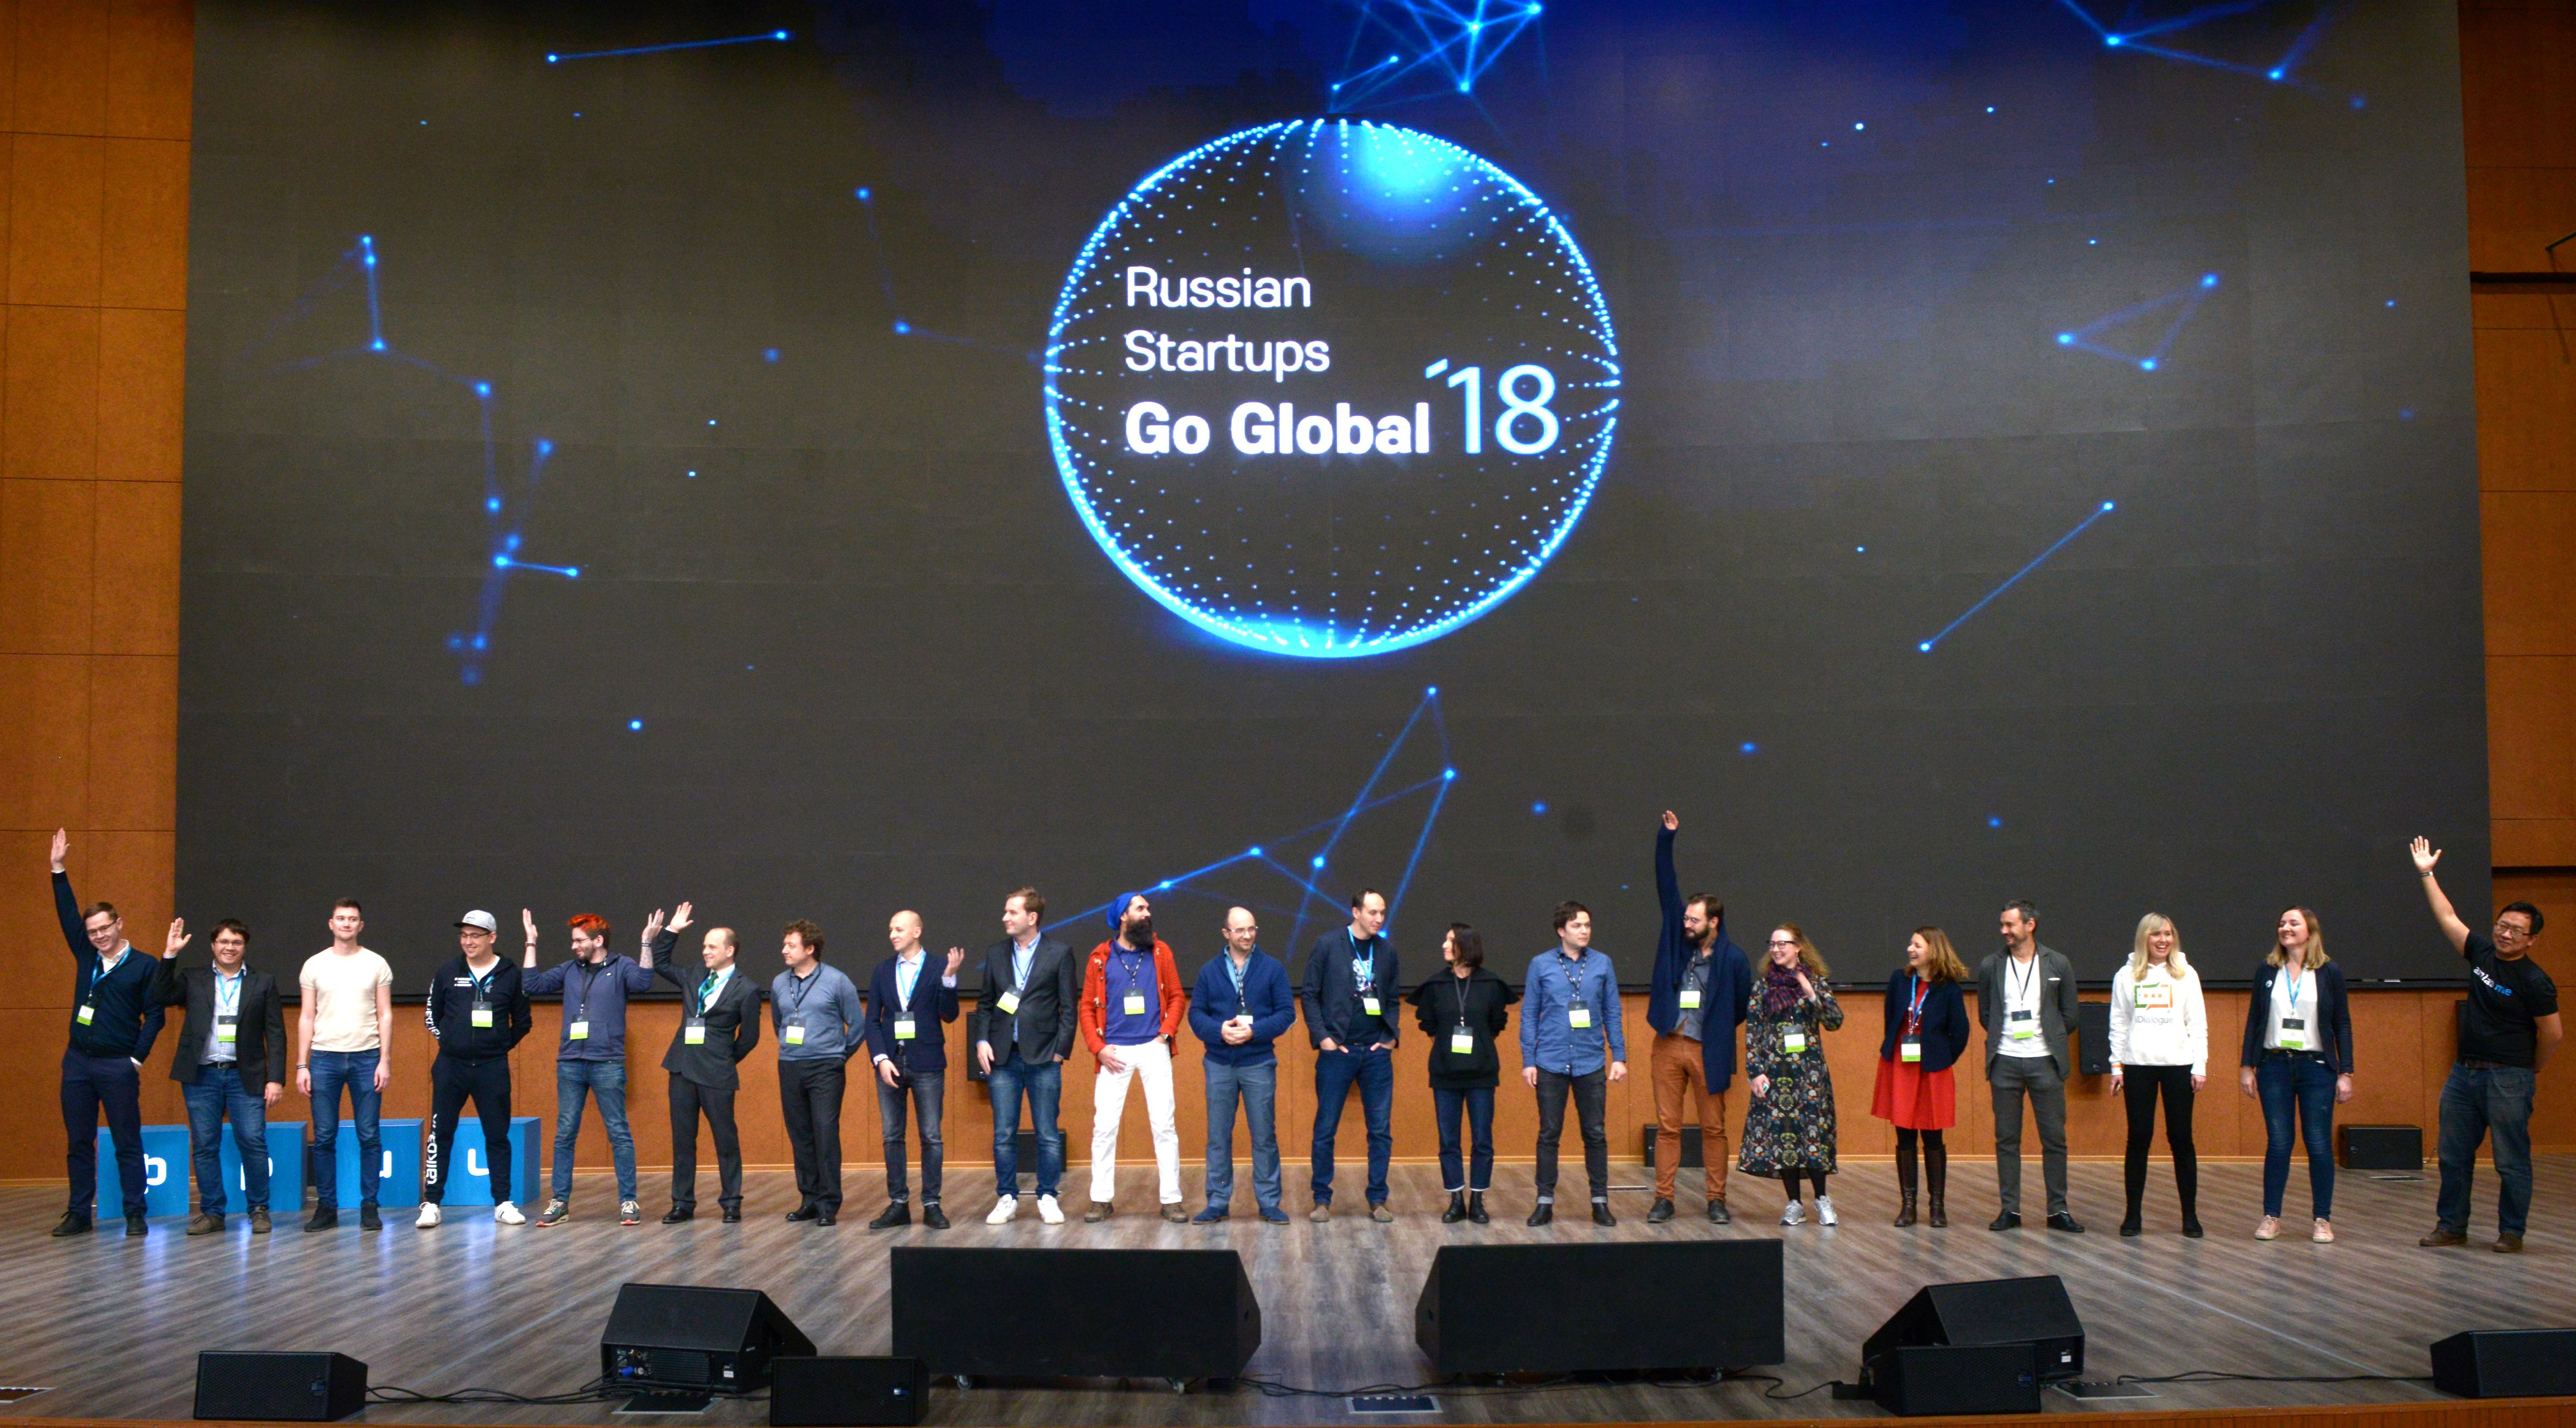 Участники питч-сессии на Russian Startups Go Global